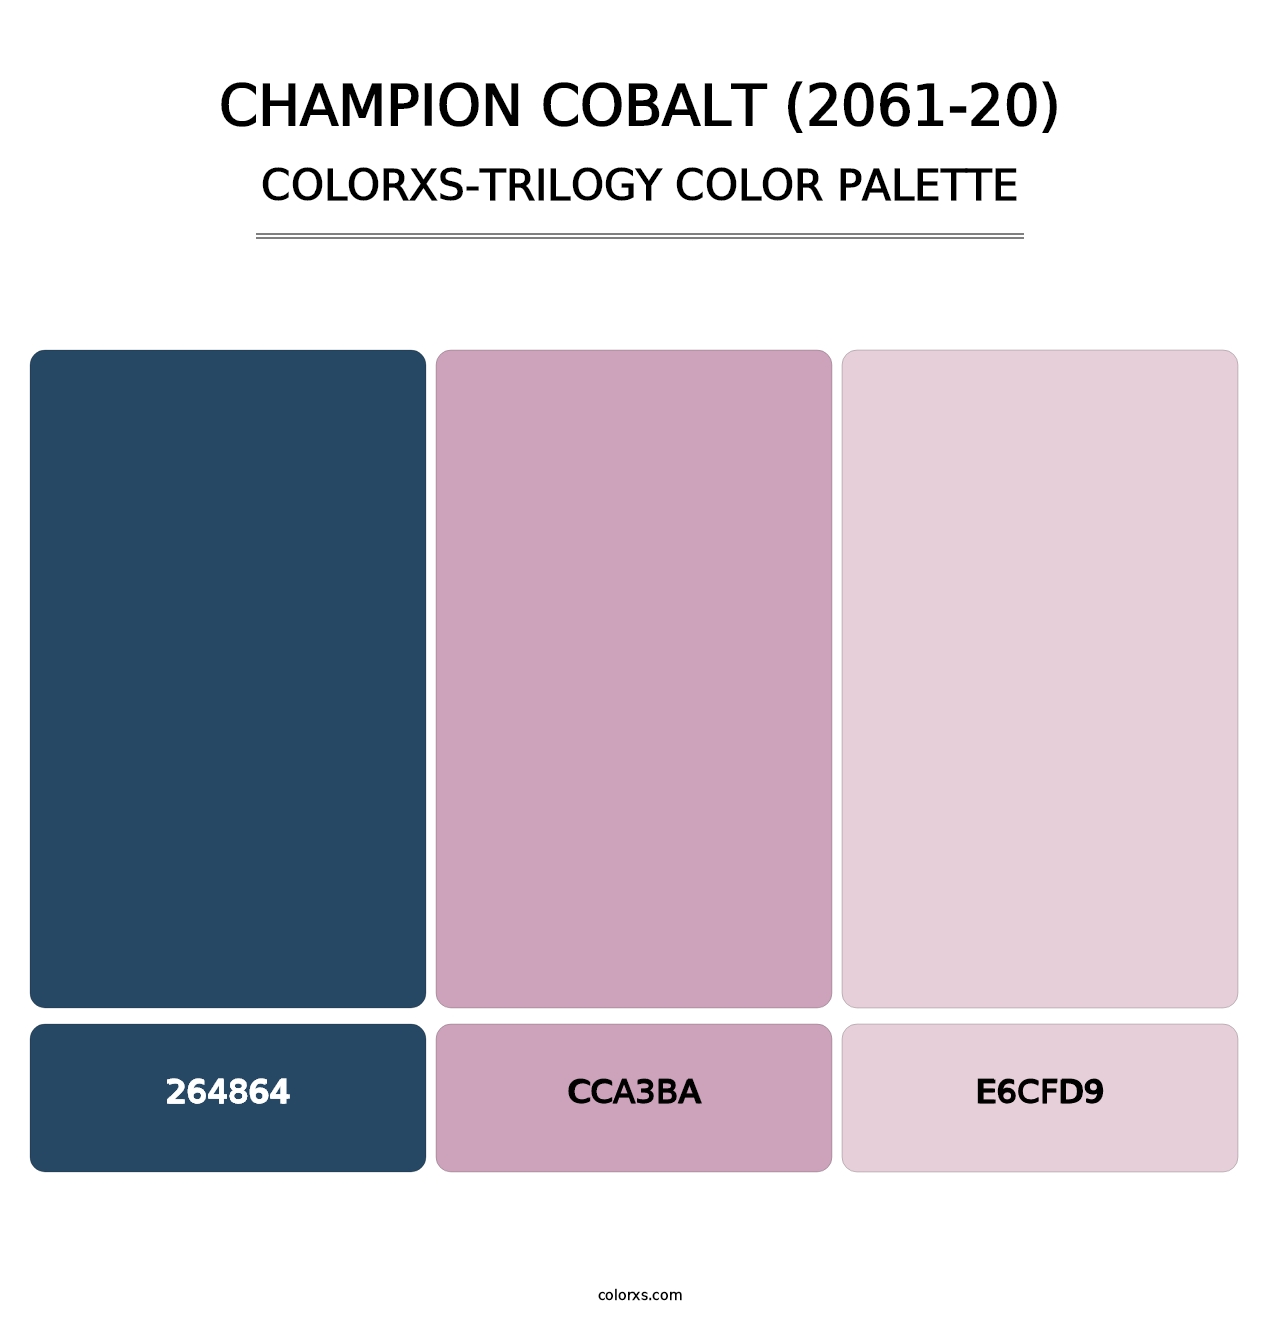 Champion Cobalt (2061-20) - Colorxs Trilogy Palette